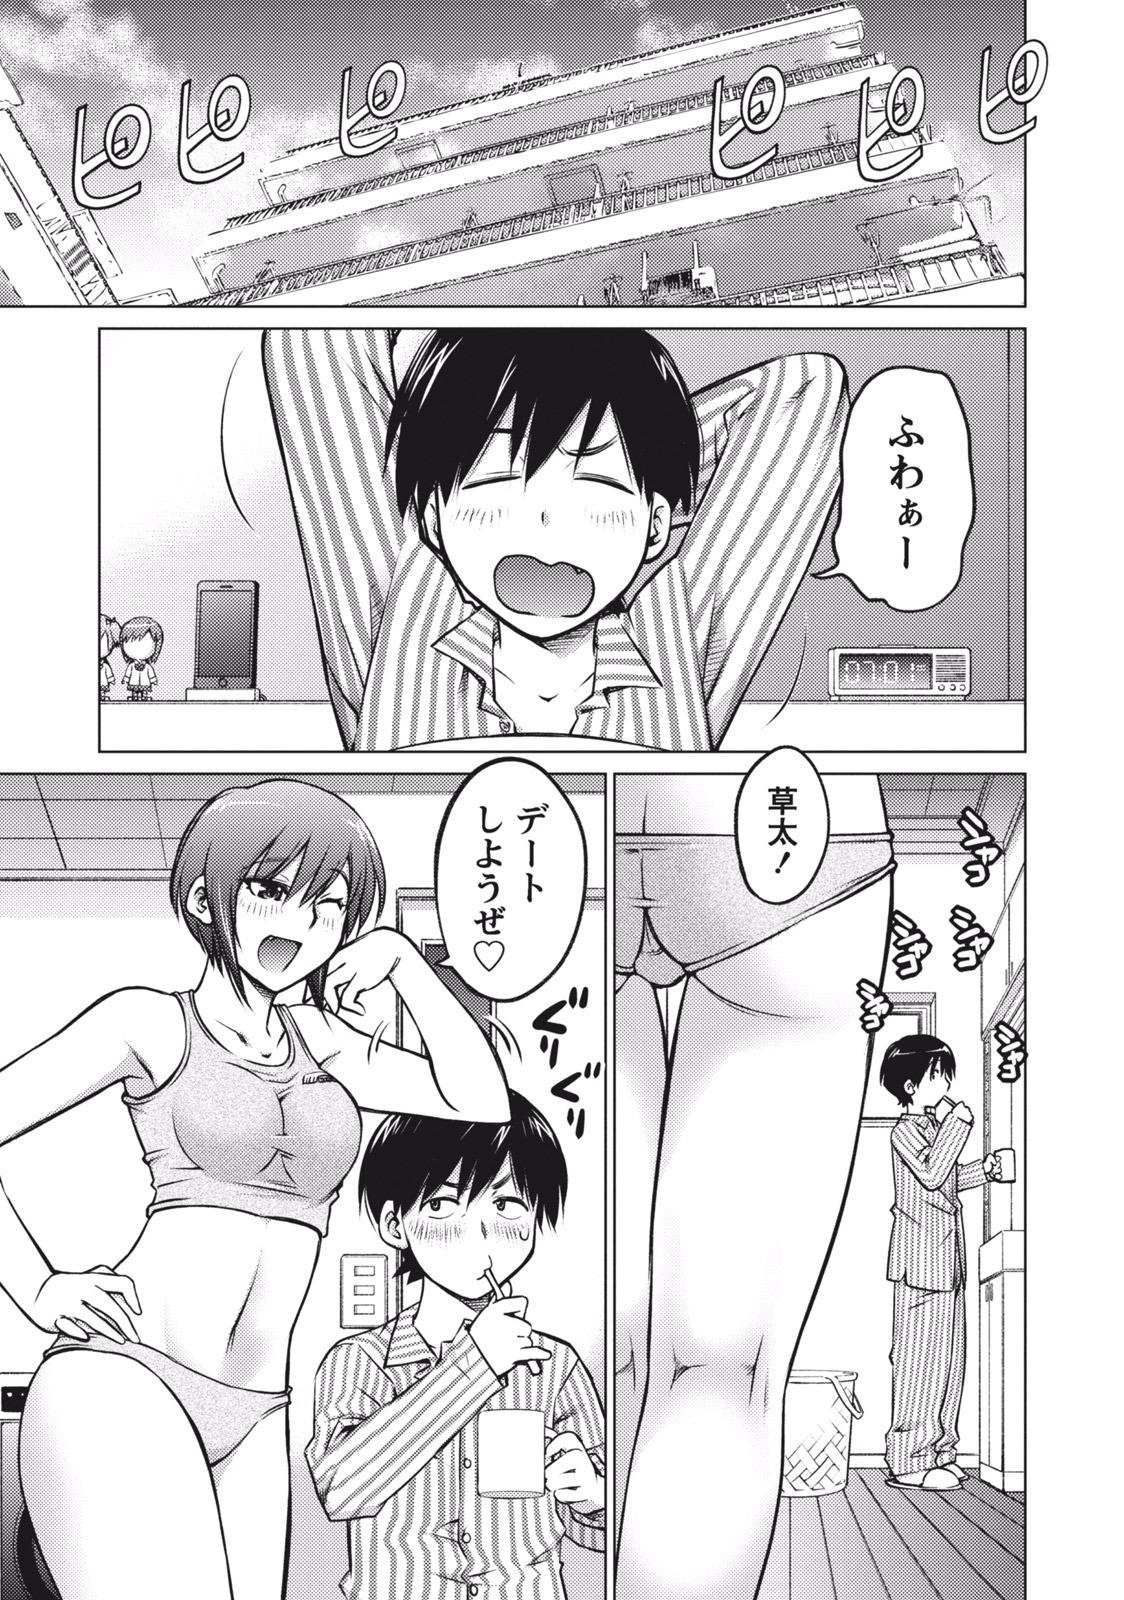 Thick Ookii Onnanoko wa Suki desu ka? Vol. 1 Vergon - Page 5